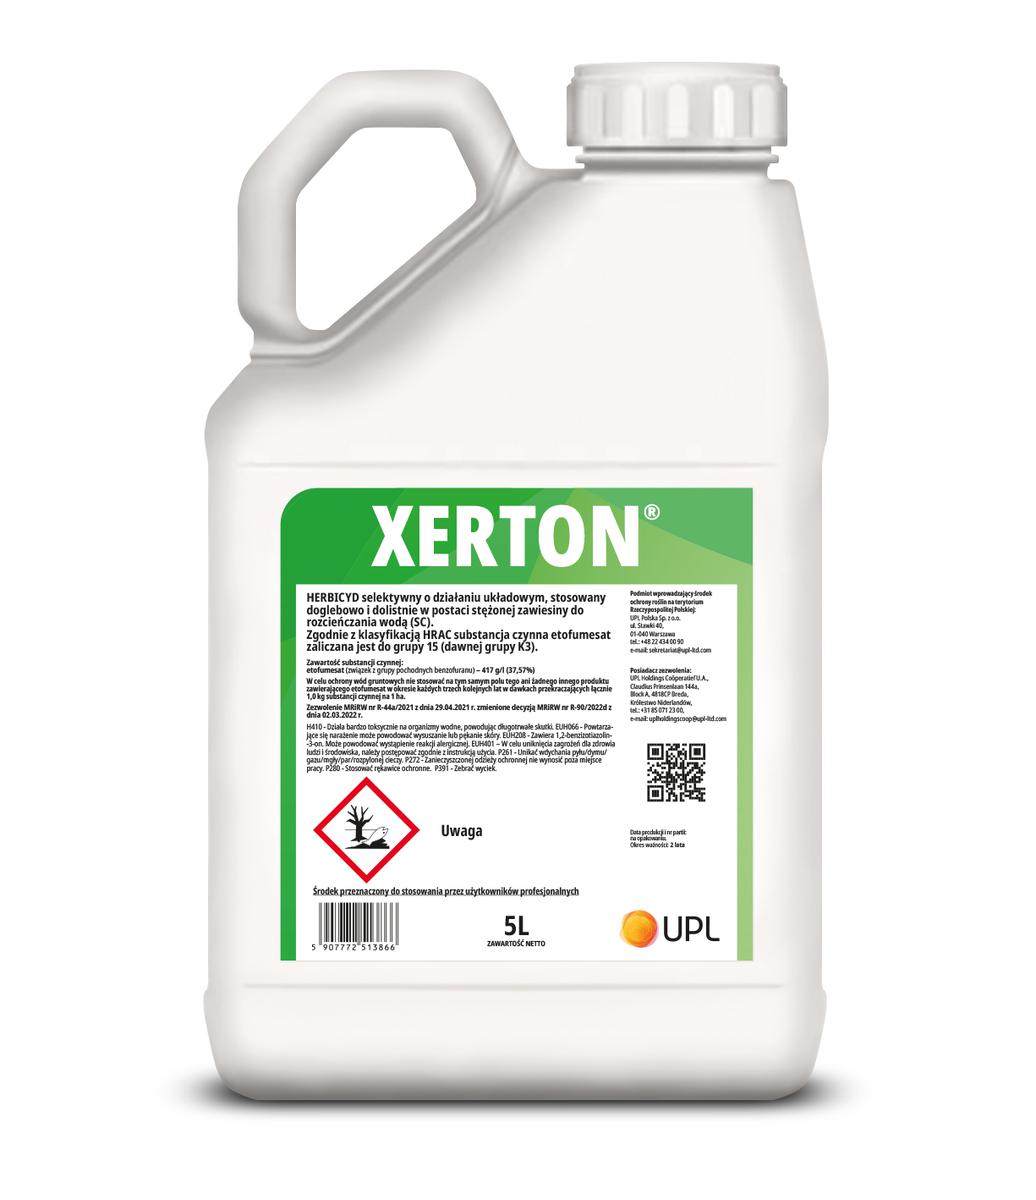 Herbicyd do zwalczania chwastów jednoliściennych w pszenicy - Xerton butleka 5 l